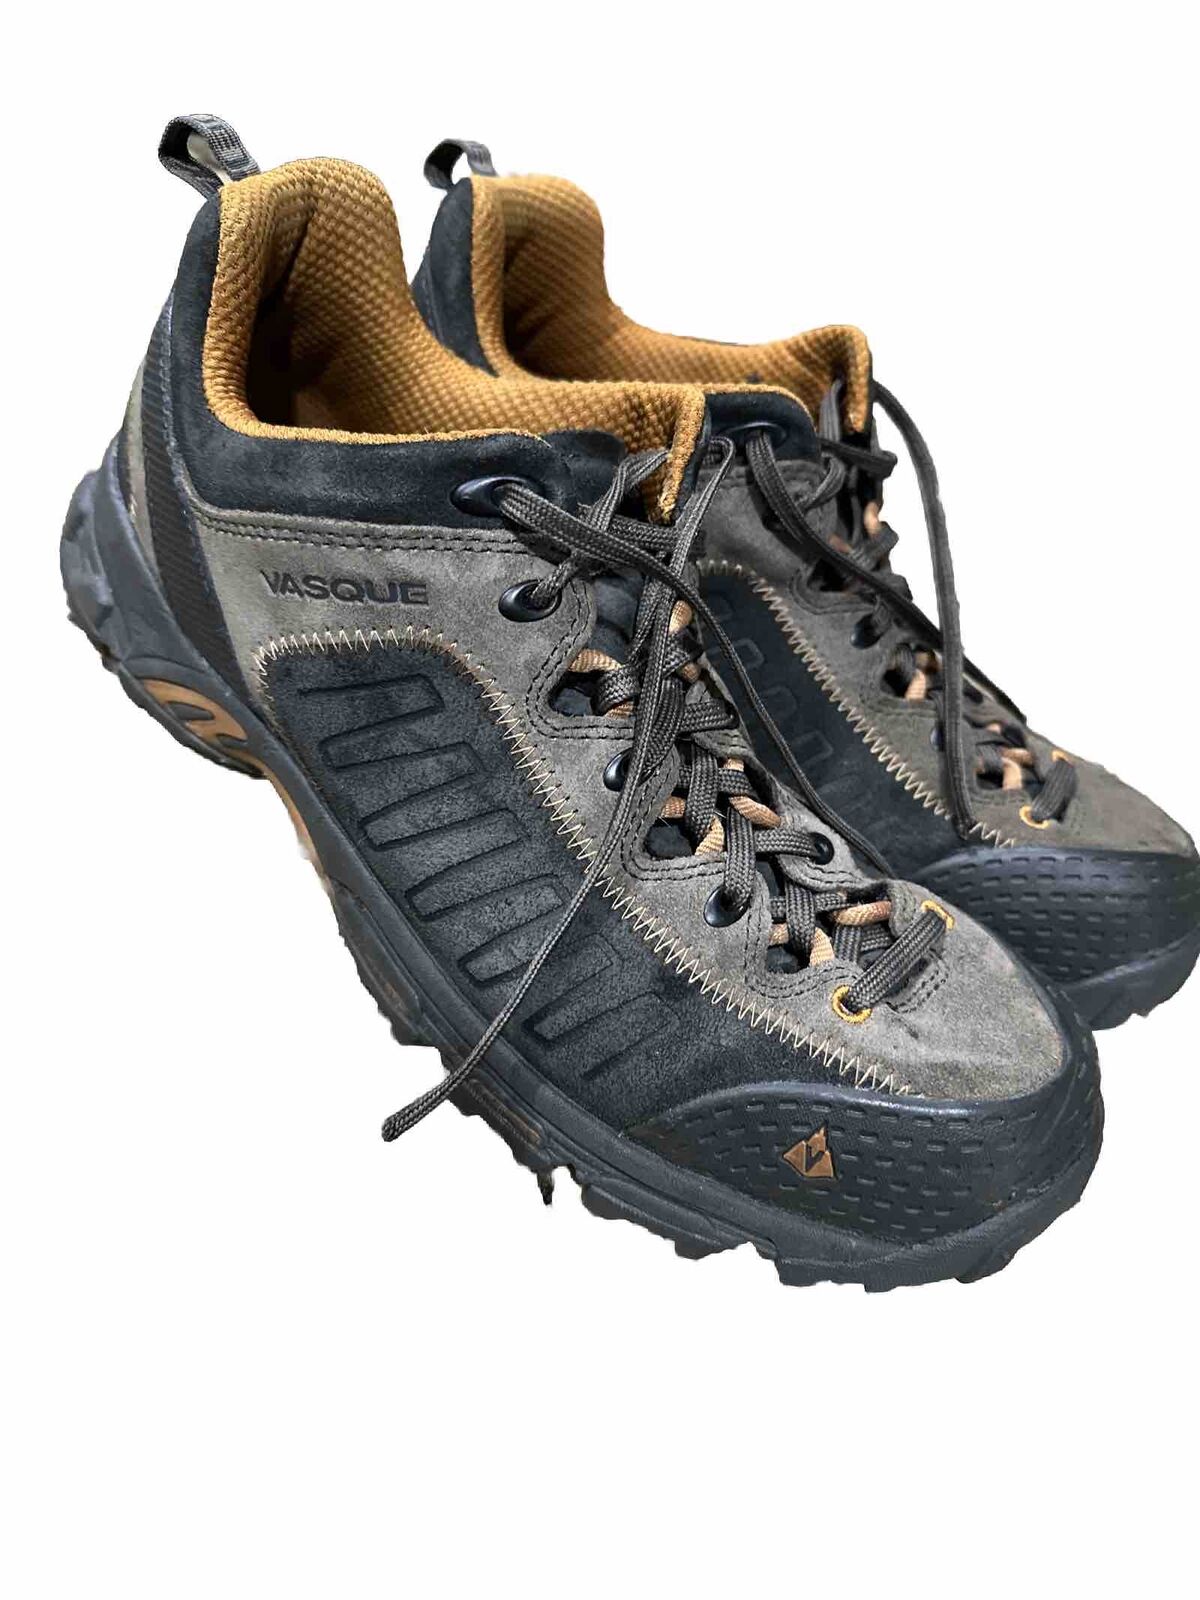 Vasque Boots Juxt Hiking Trail Shoes Brown Suede Men's US Size 11.5